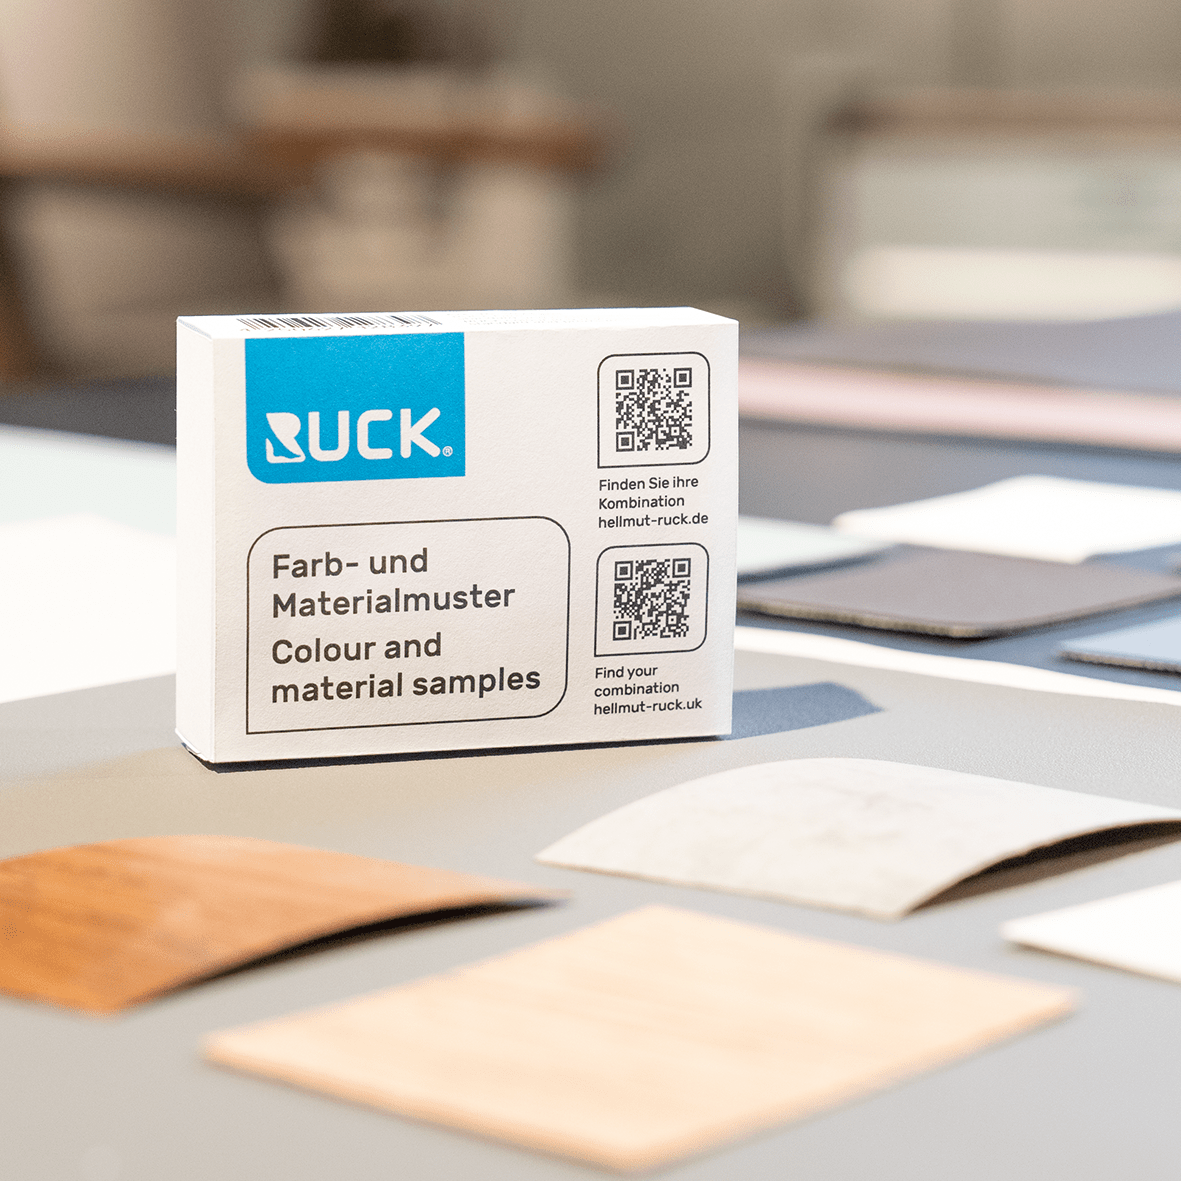 RUCK - RUCK Farb- und Materialmuster standard und premium